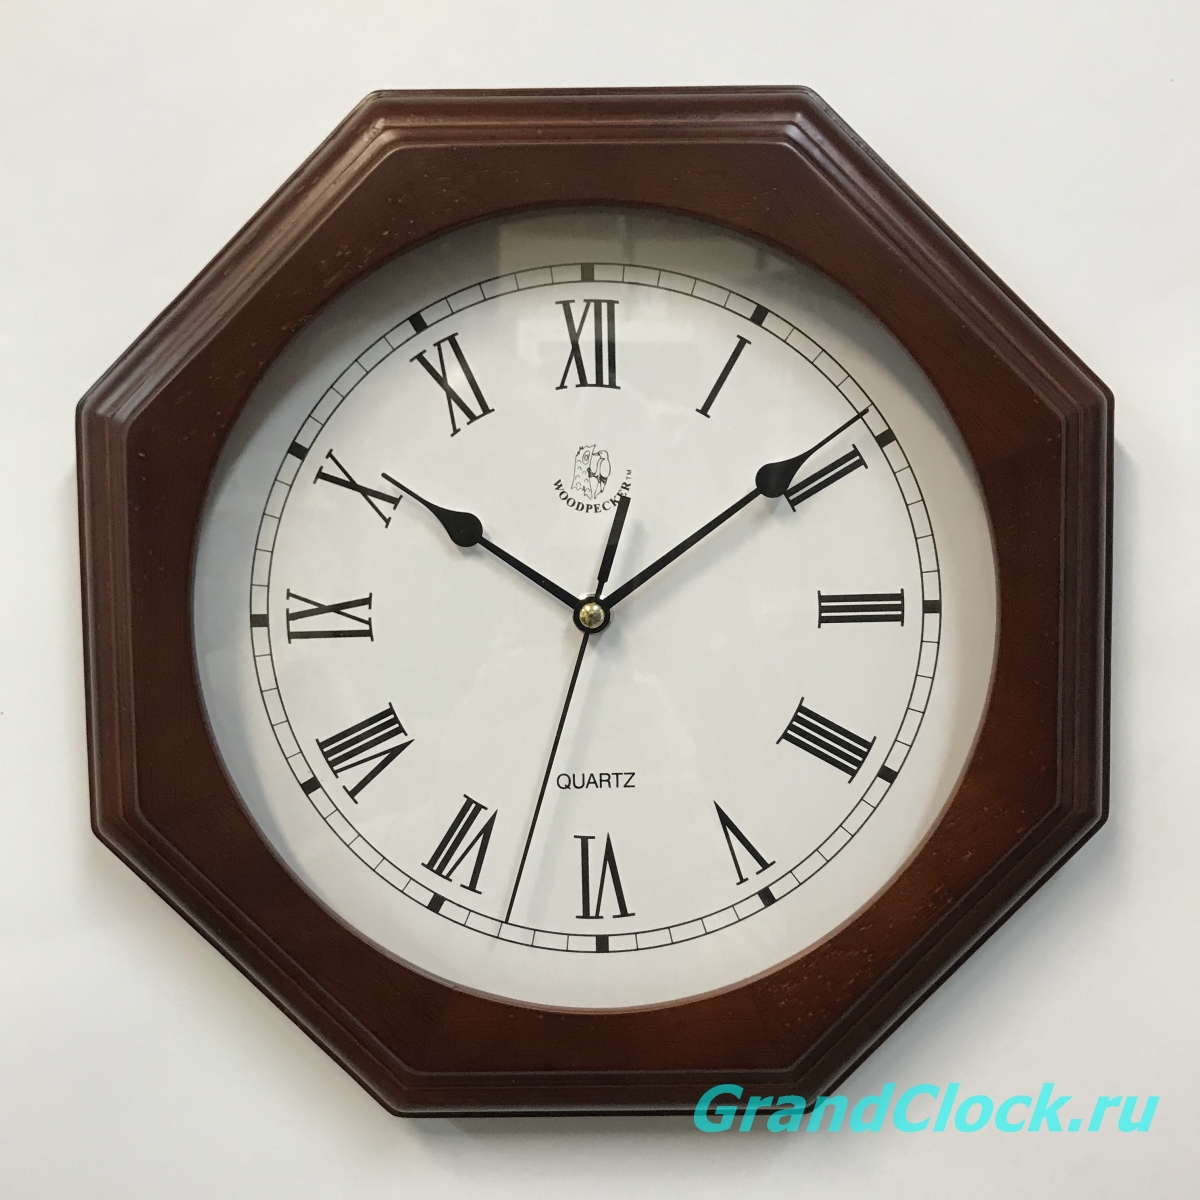 Настенные часы WOODPECKER в деревянном корпусе 7119 (07)